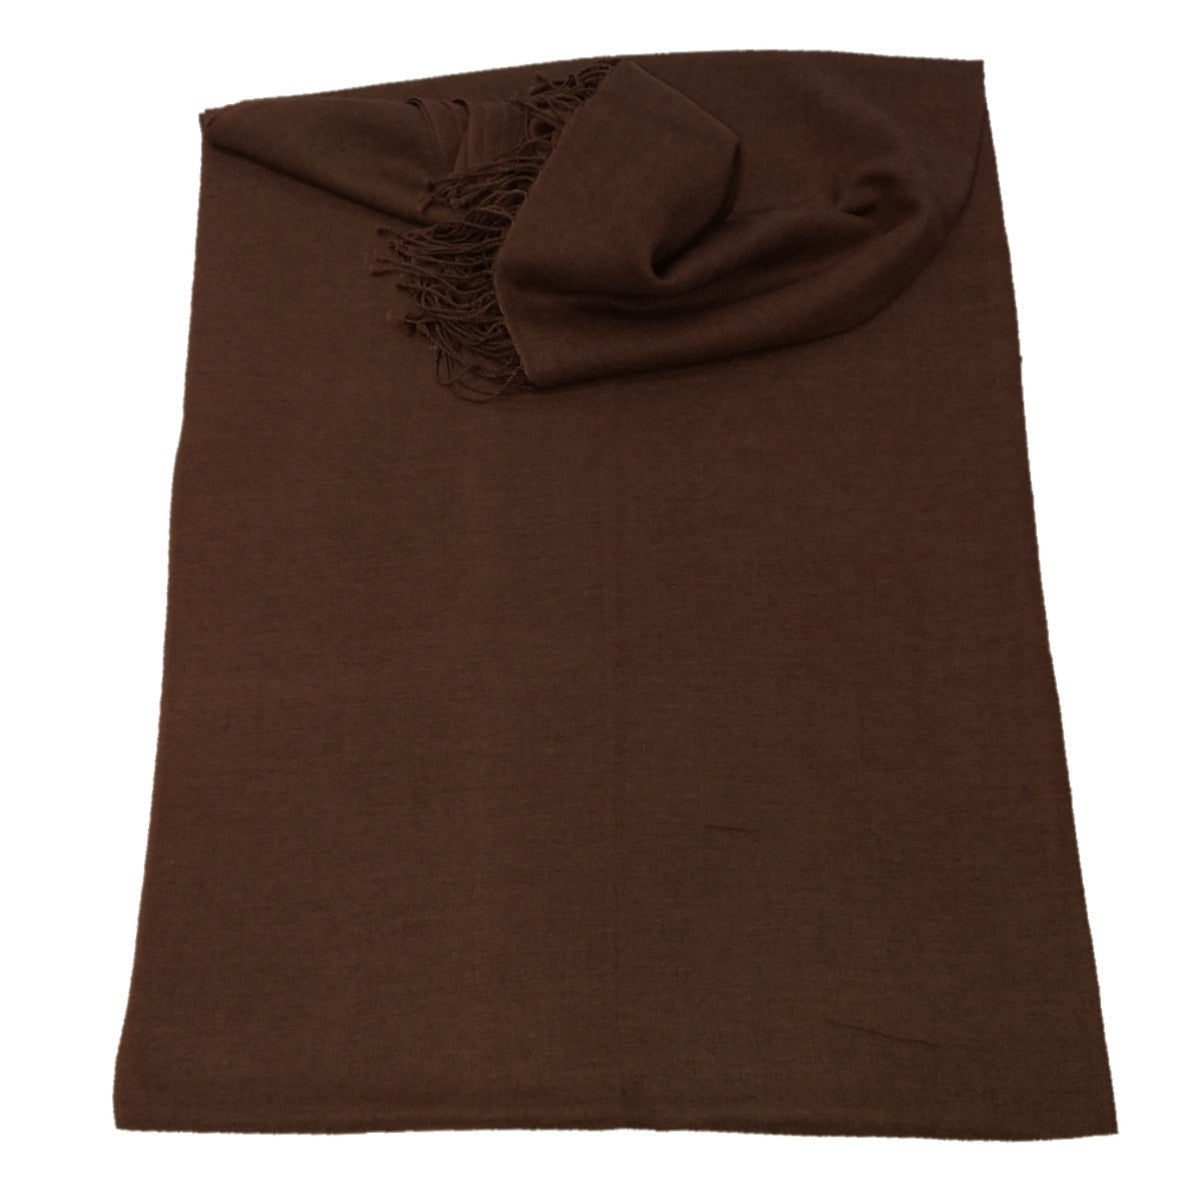 Brown pashmina scarf